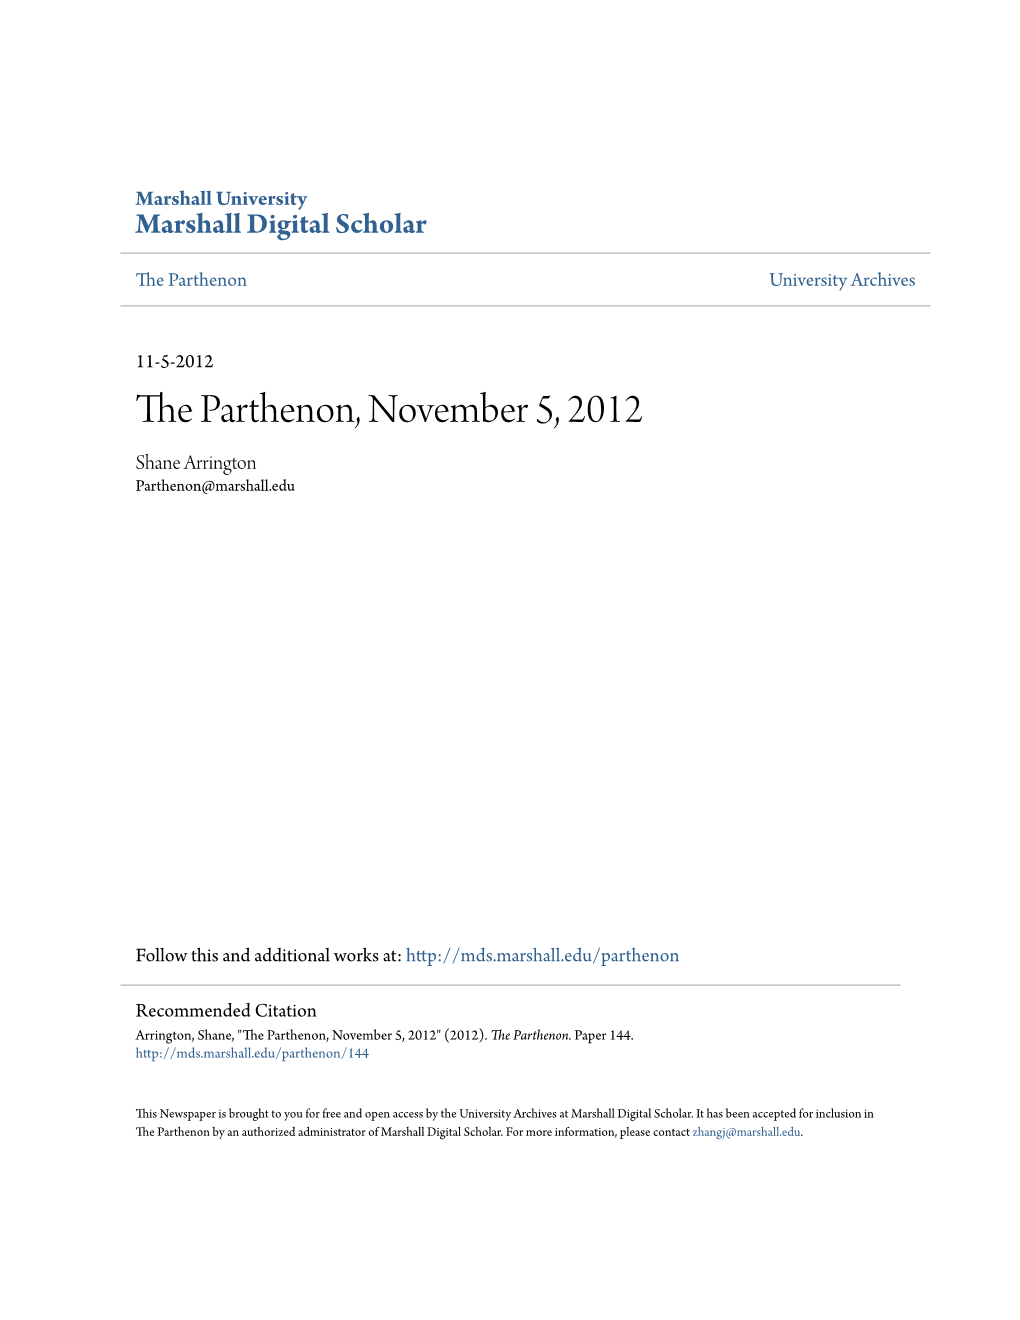 The Parthenon, November 5, 2012